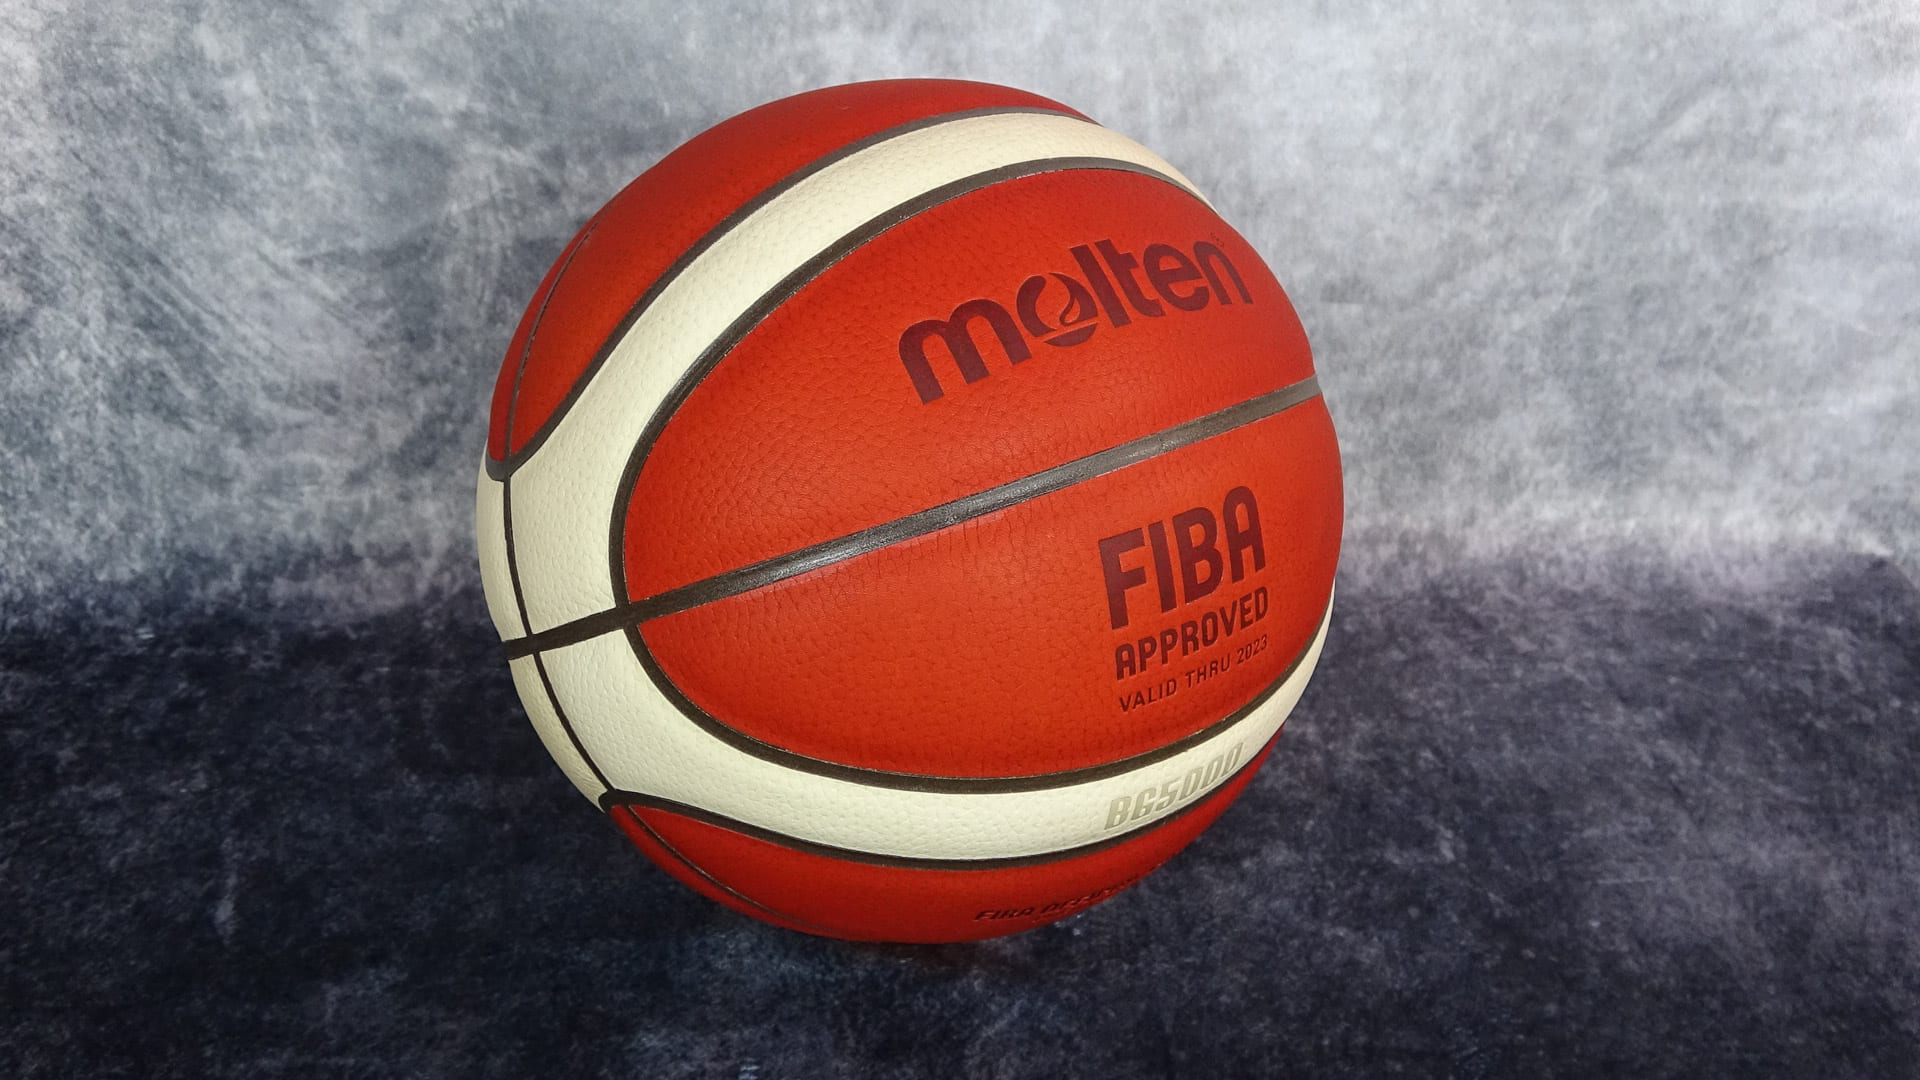 Análisis Molten BG5000. El nuevo balón oficial FIBA de cuero alta competición indoor de baloncesto.